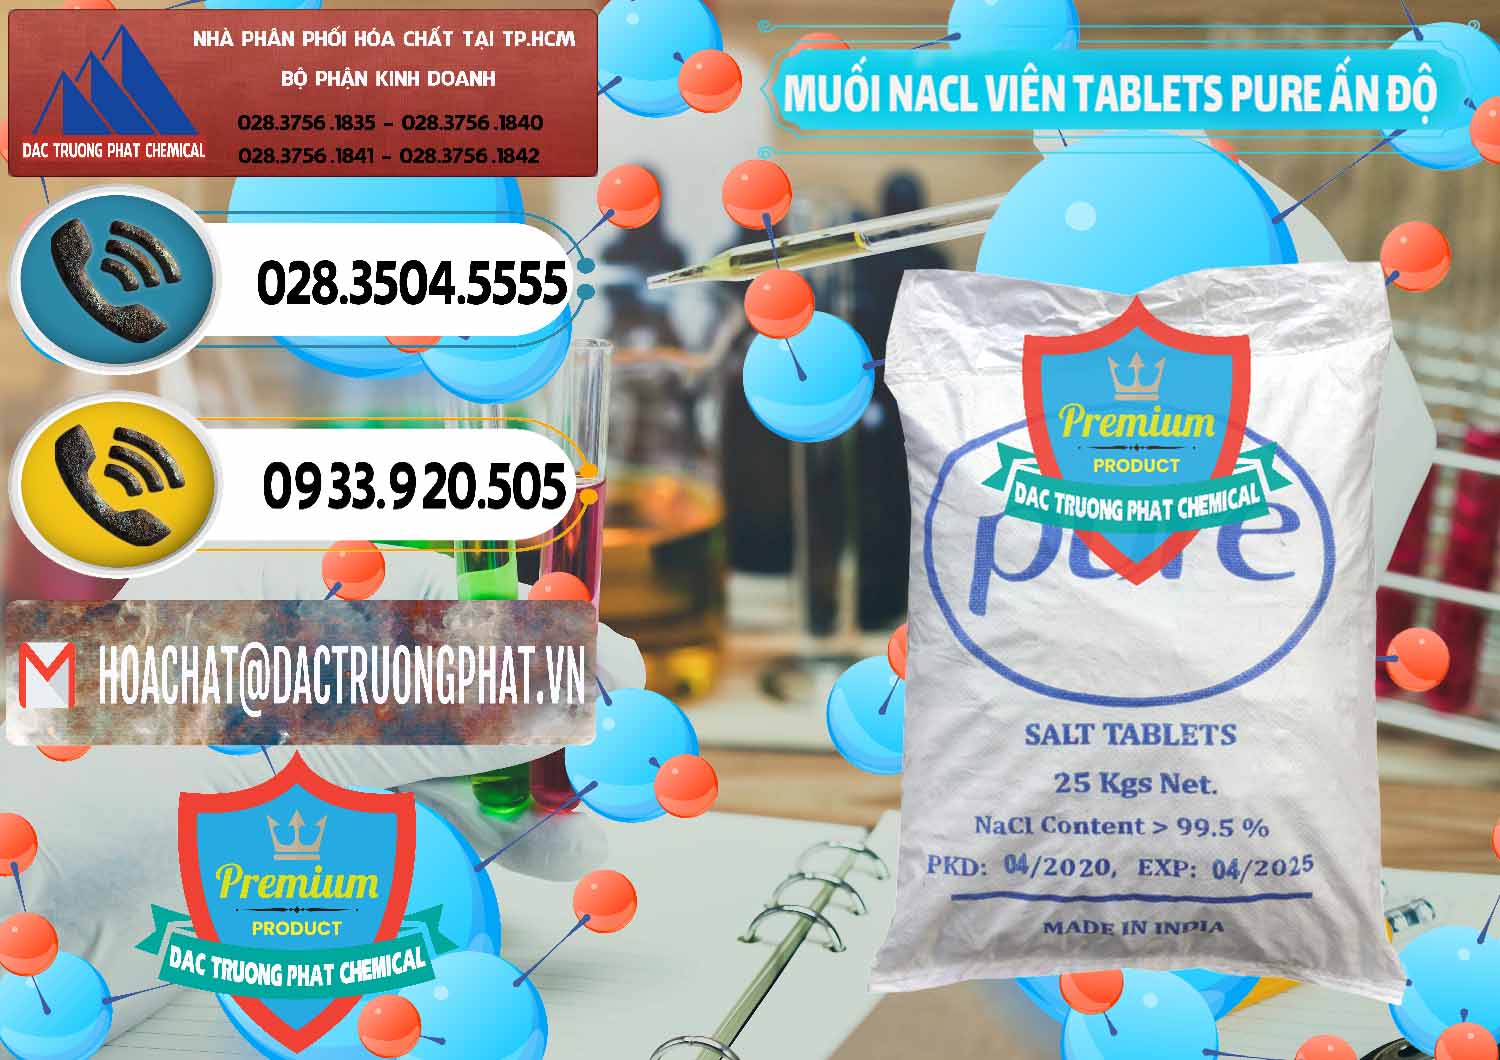 Cty phân phối - bán Muối NaCL – Sodium Chloride Dạng Viên Tablets Pure Ấn Độ India - 0294 - Cty chuyên cung cấp _ bán hóa chất tại TP.HCM - hoachatdetnhuom.vn